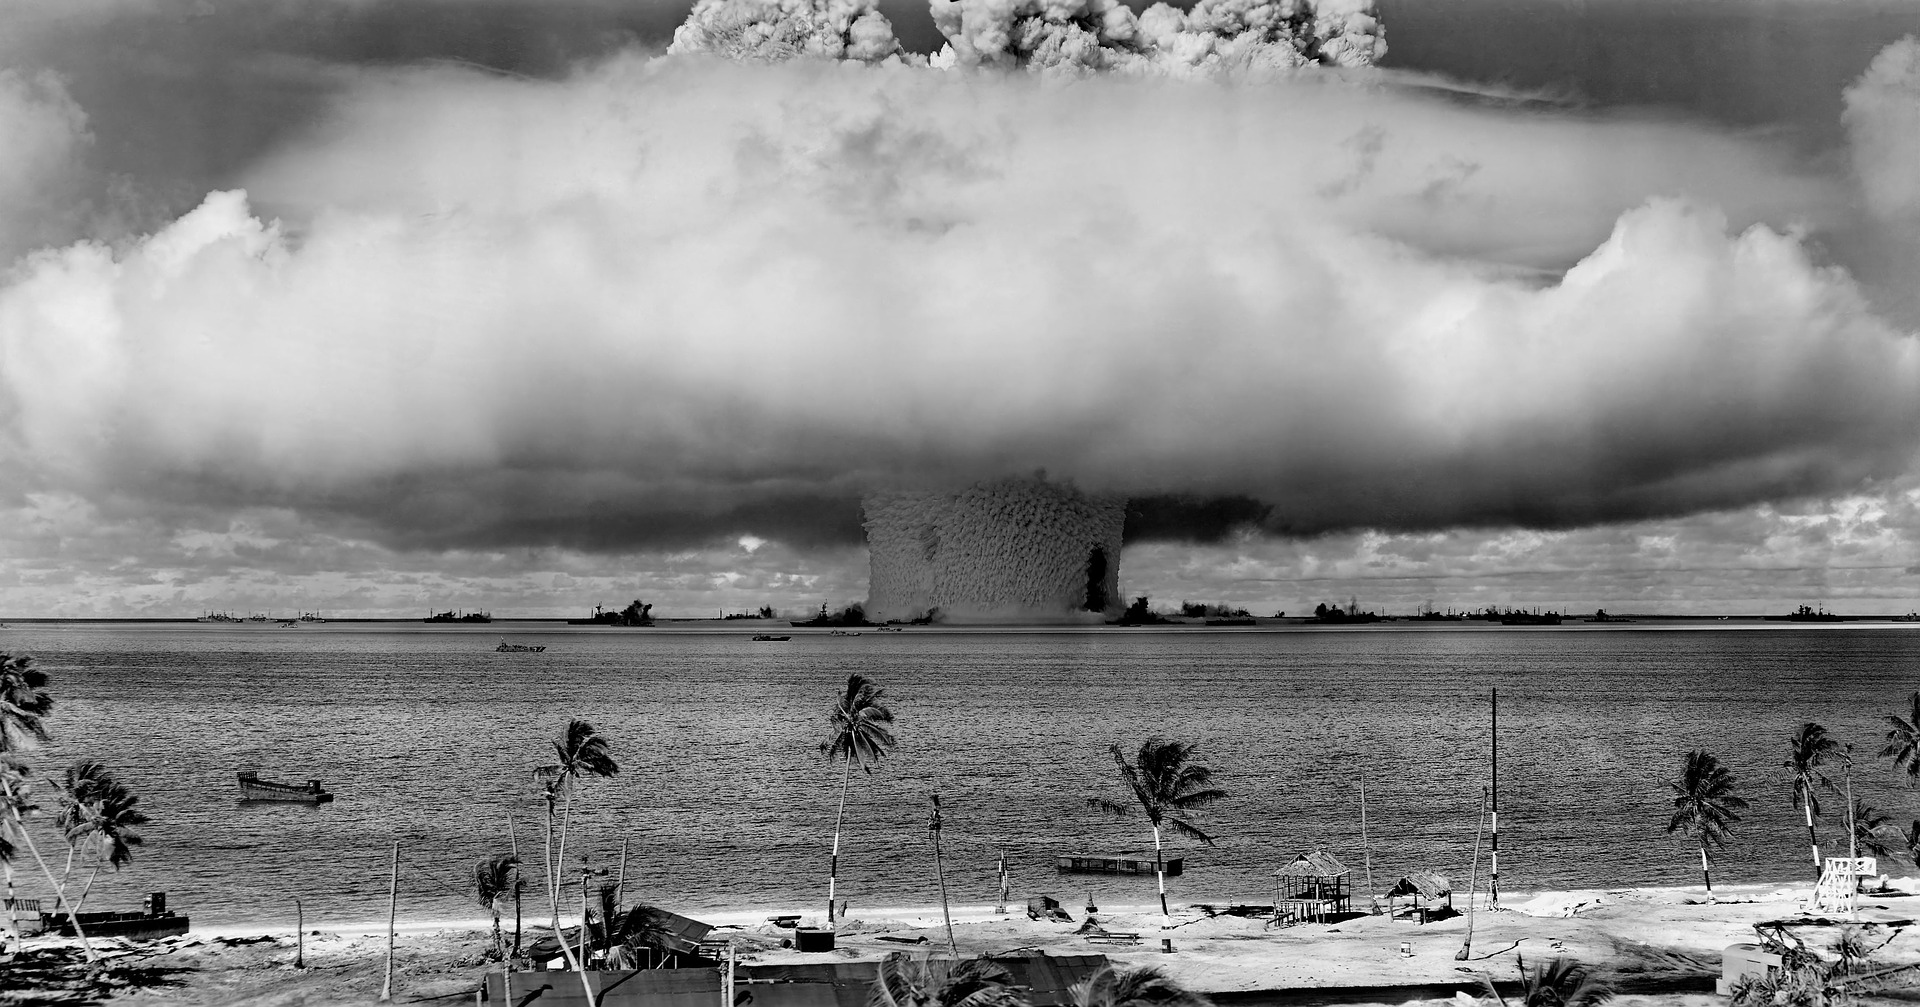 In der 40er und 50er Jahren wurden im Bikini Atoll zahlreiche Atomtests durchgeführt und dabei etliche Kriegsschiffe versenkt. Foto: Pixabay atomtest im bikini atoll marshall inseln pazifik tauchen wracks